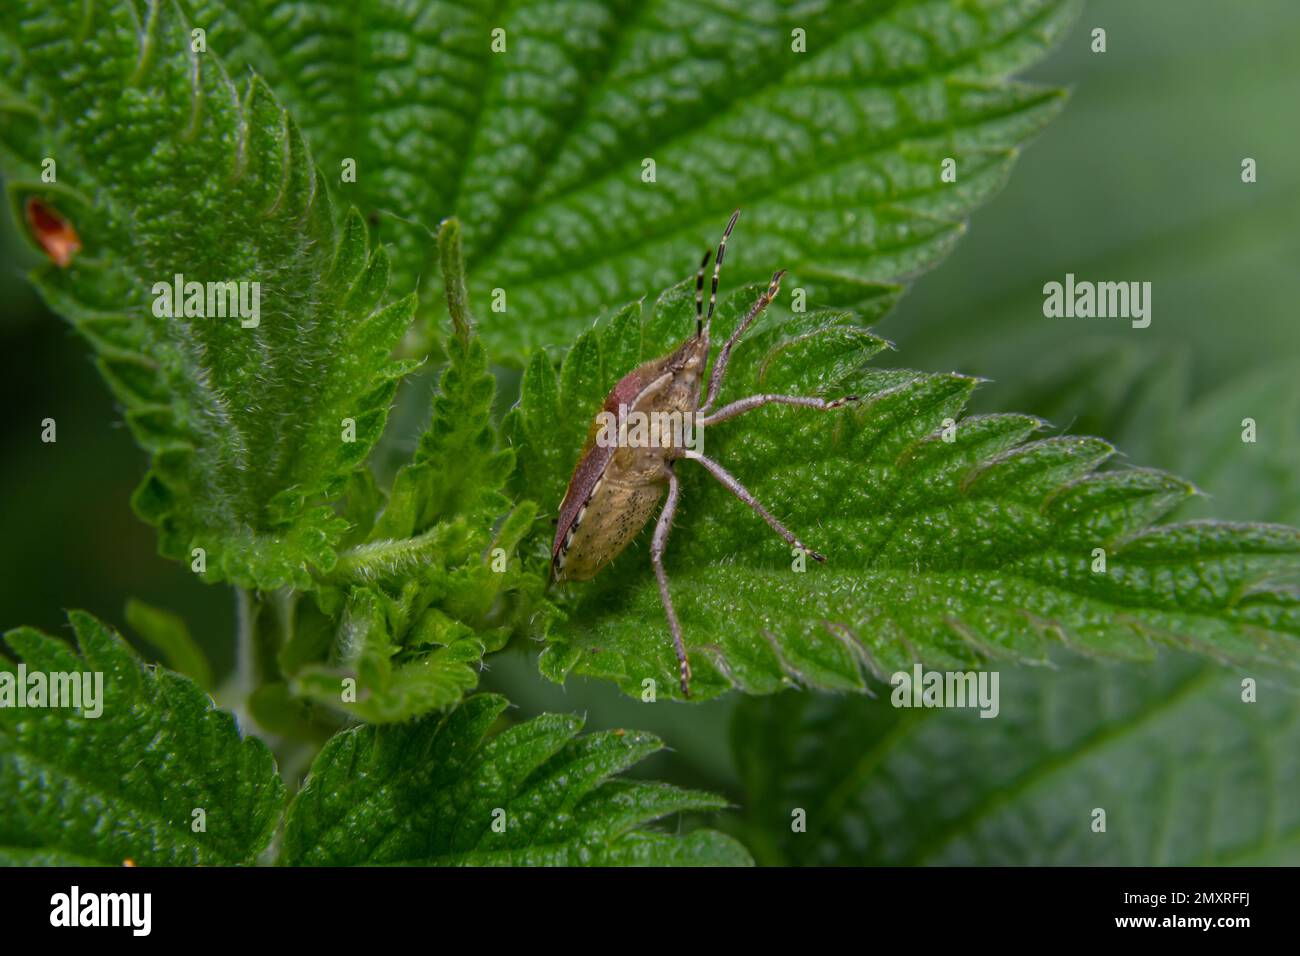 Cerca del insecto de la perezosa o el insecto peludo, Dolycoris baccarum, en el jardín en una hoja verde. Foto de stock